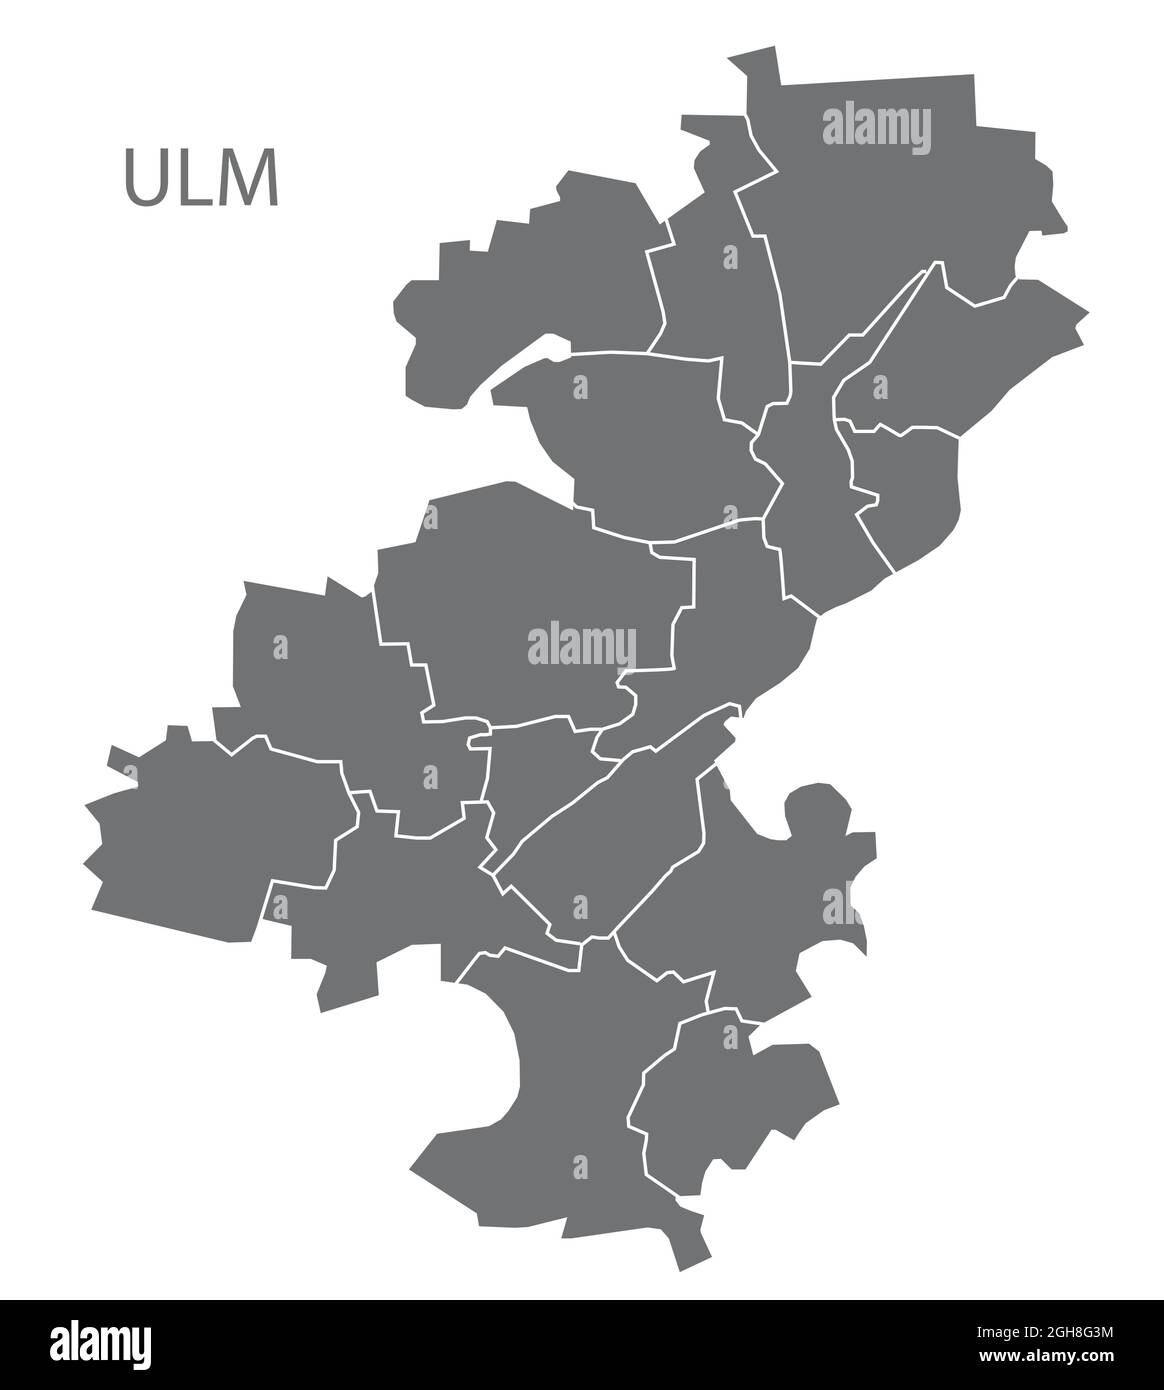 Mappa della città moderna - Ulm città di Germania con i distretti grigio DE Illustrazione Vettoriale